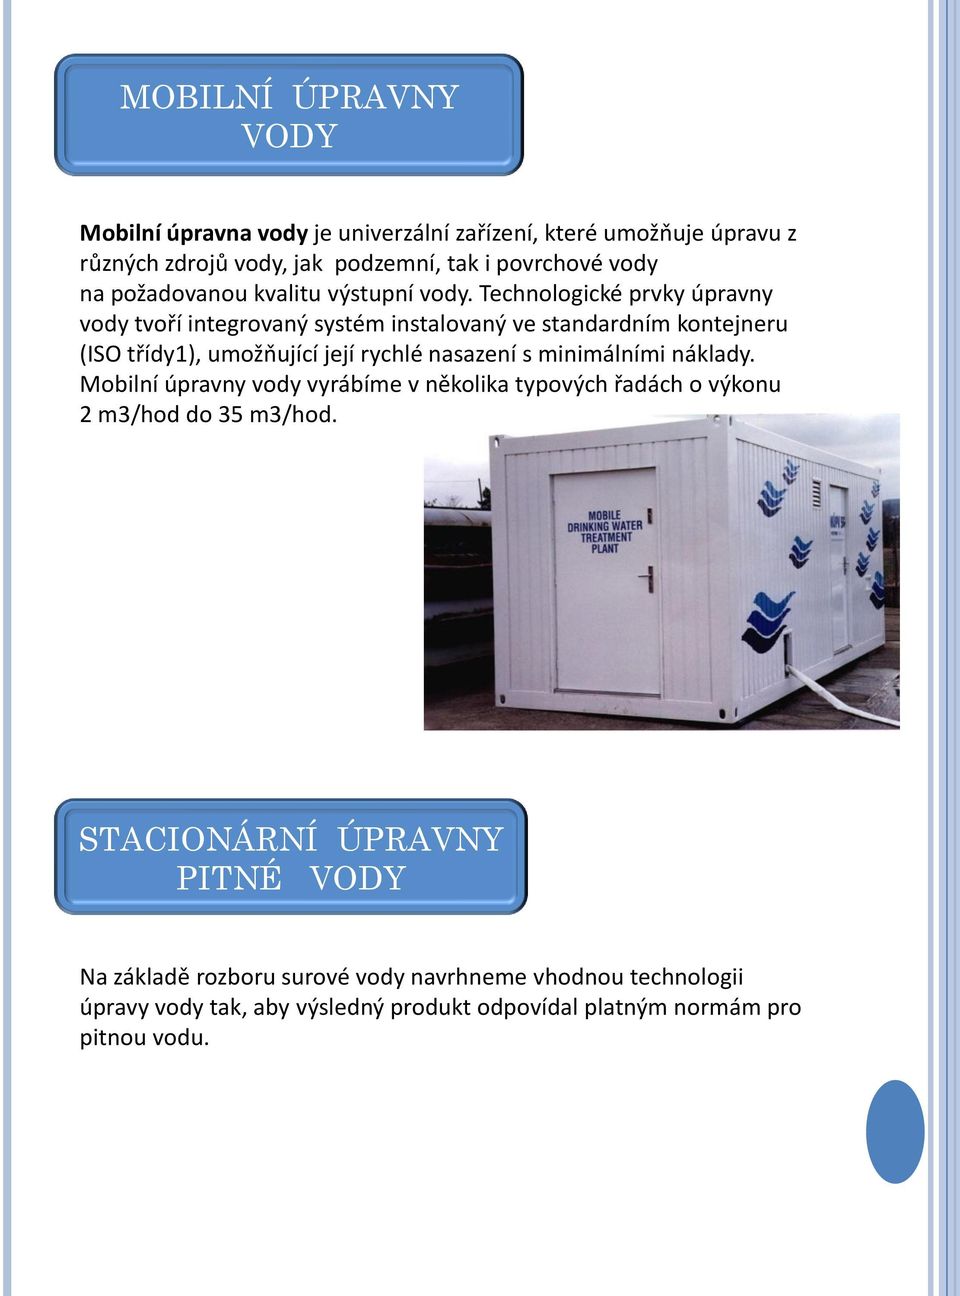 Technologické prvky úpravny vody tvoří integrovaný systém instalovaný ve standardním kontejneru (ISO třídy1), umožňující její rychlé nasazení s